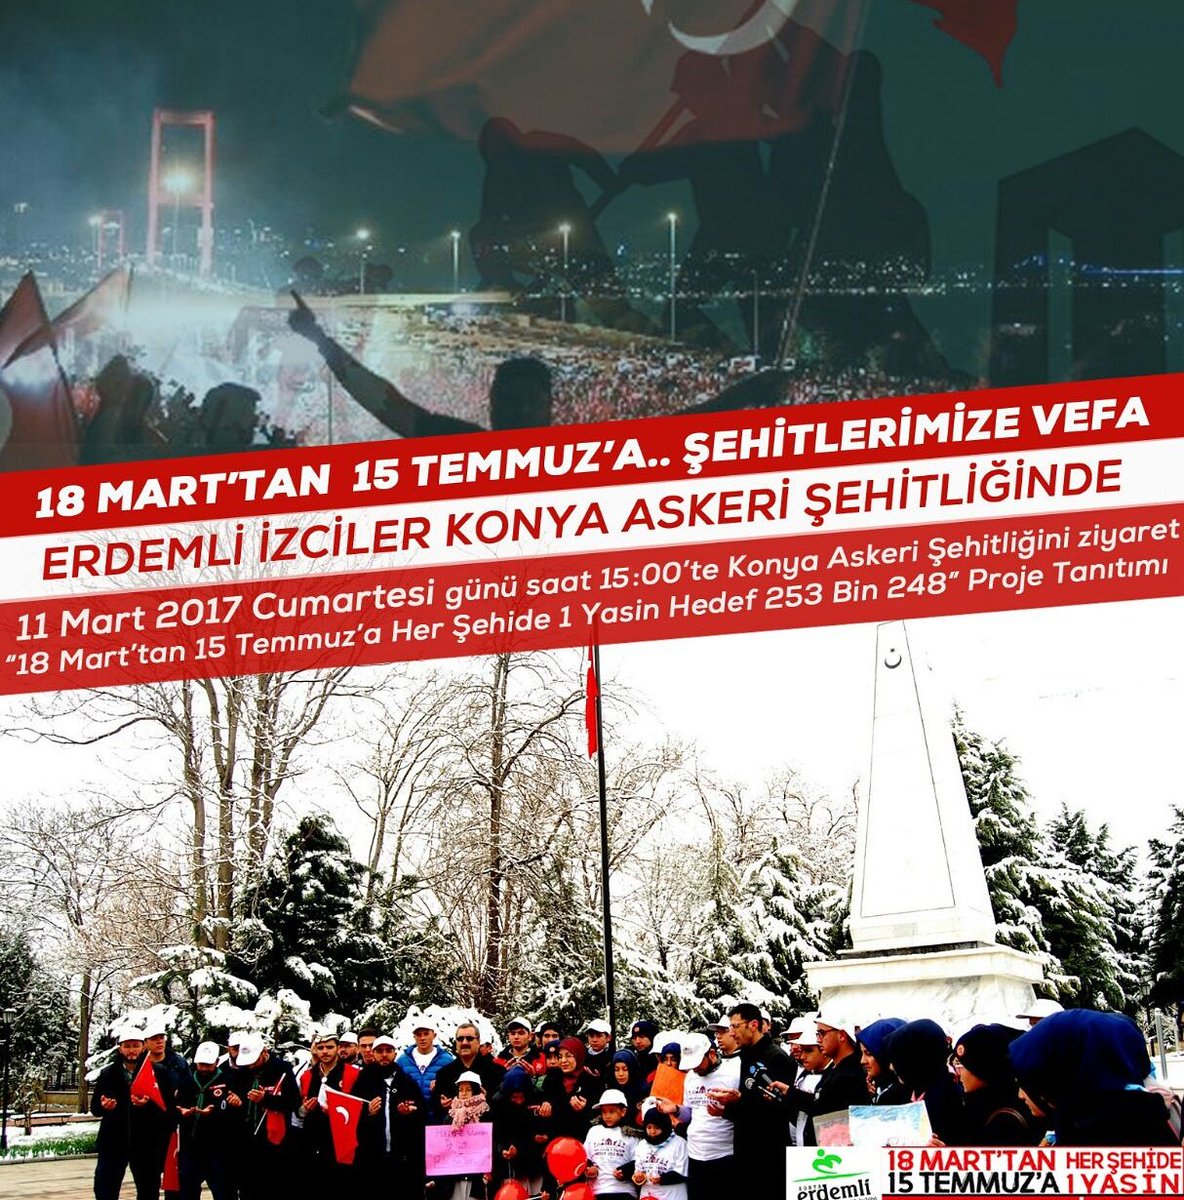 Erdemli İzciler Çanakkale ve 15 Temmuz şehitlerini yad ediyor.. @konhaber @iha_konya @KONTV @Kanal42Konya @anadoluajansi @tarihikonya